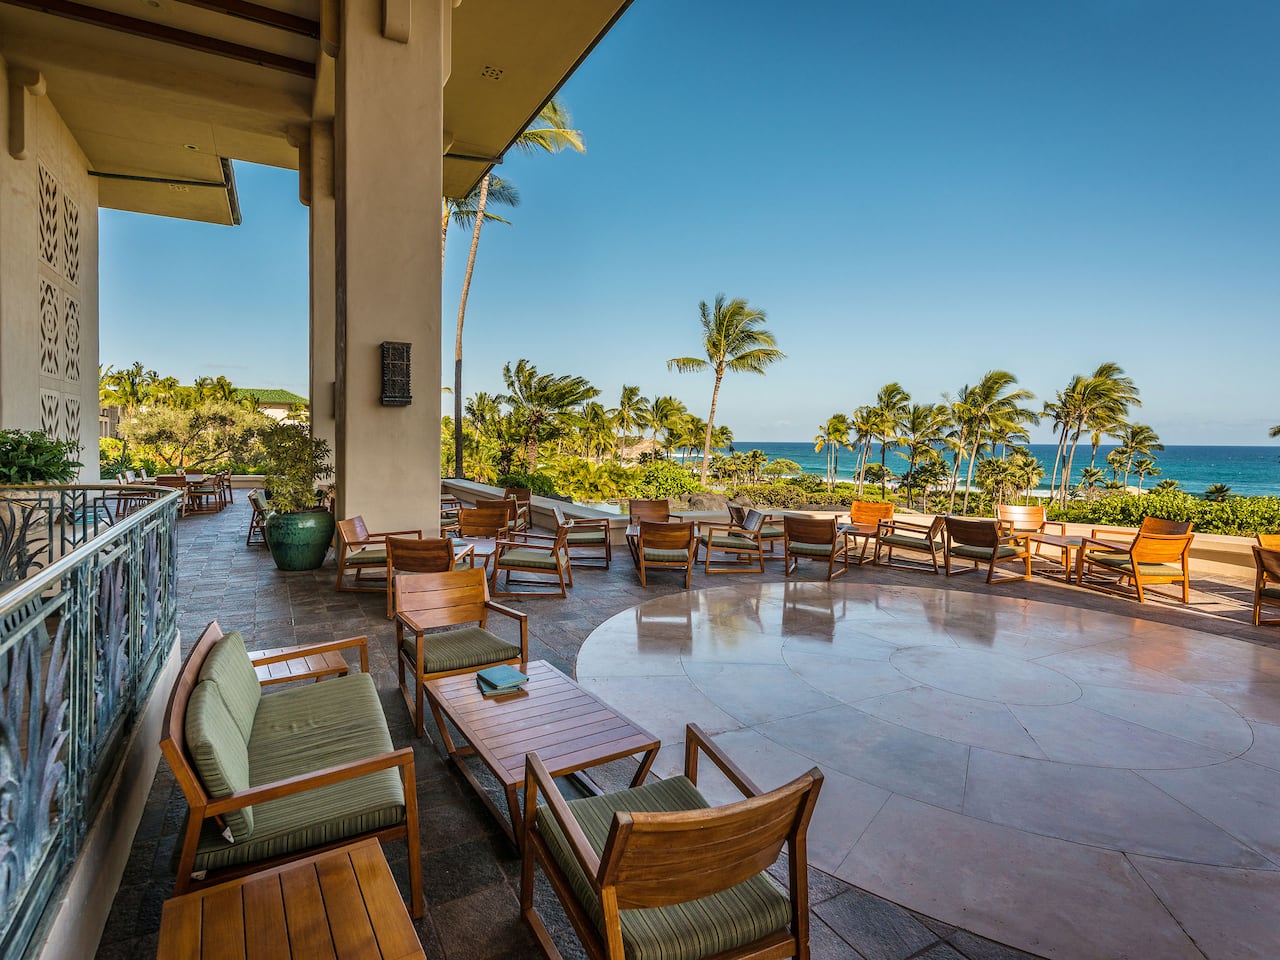 Seaview Terrace at Grand Hyatt Kauai